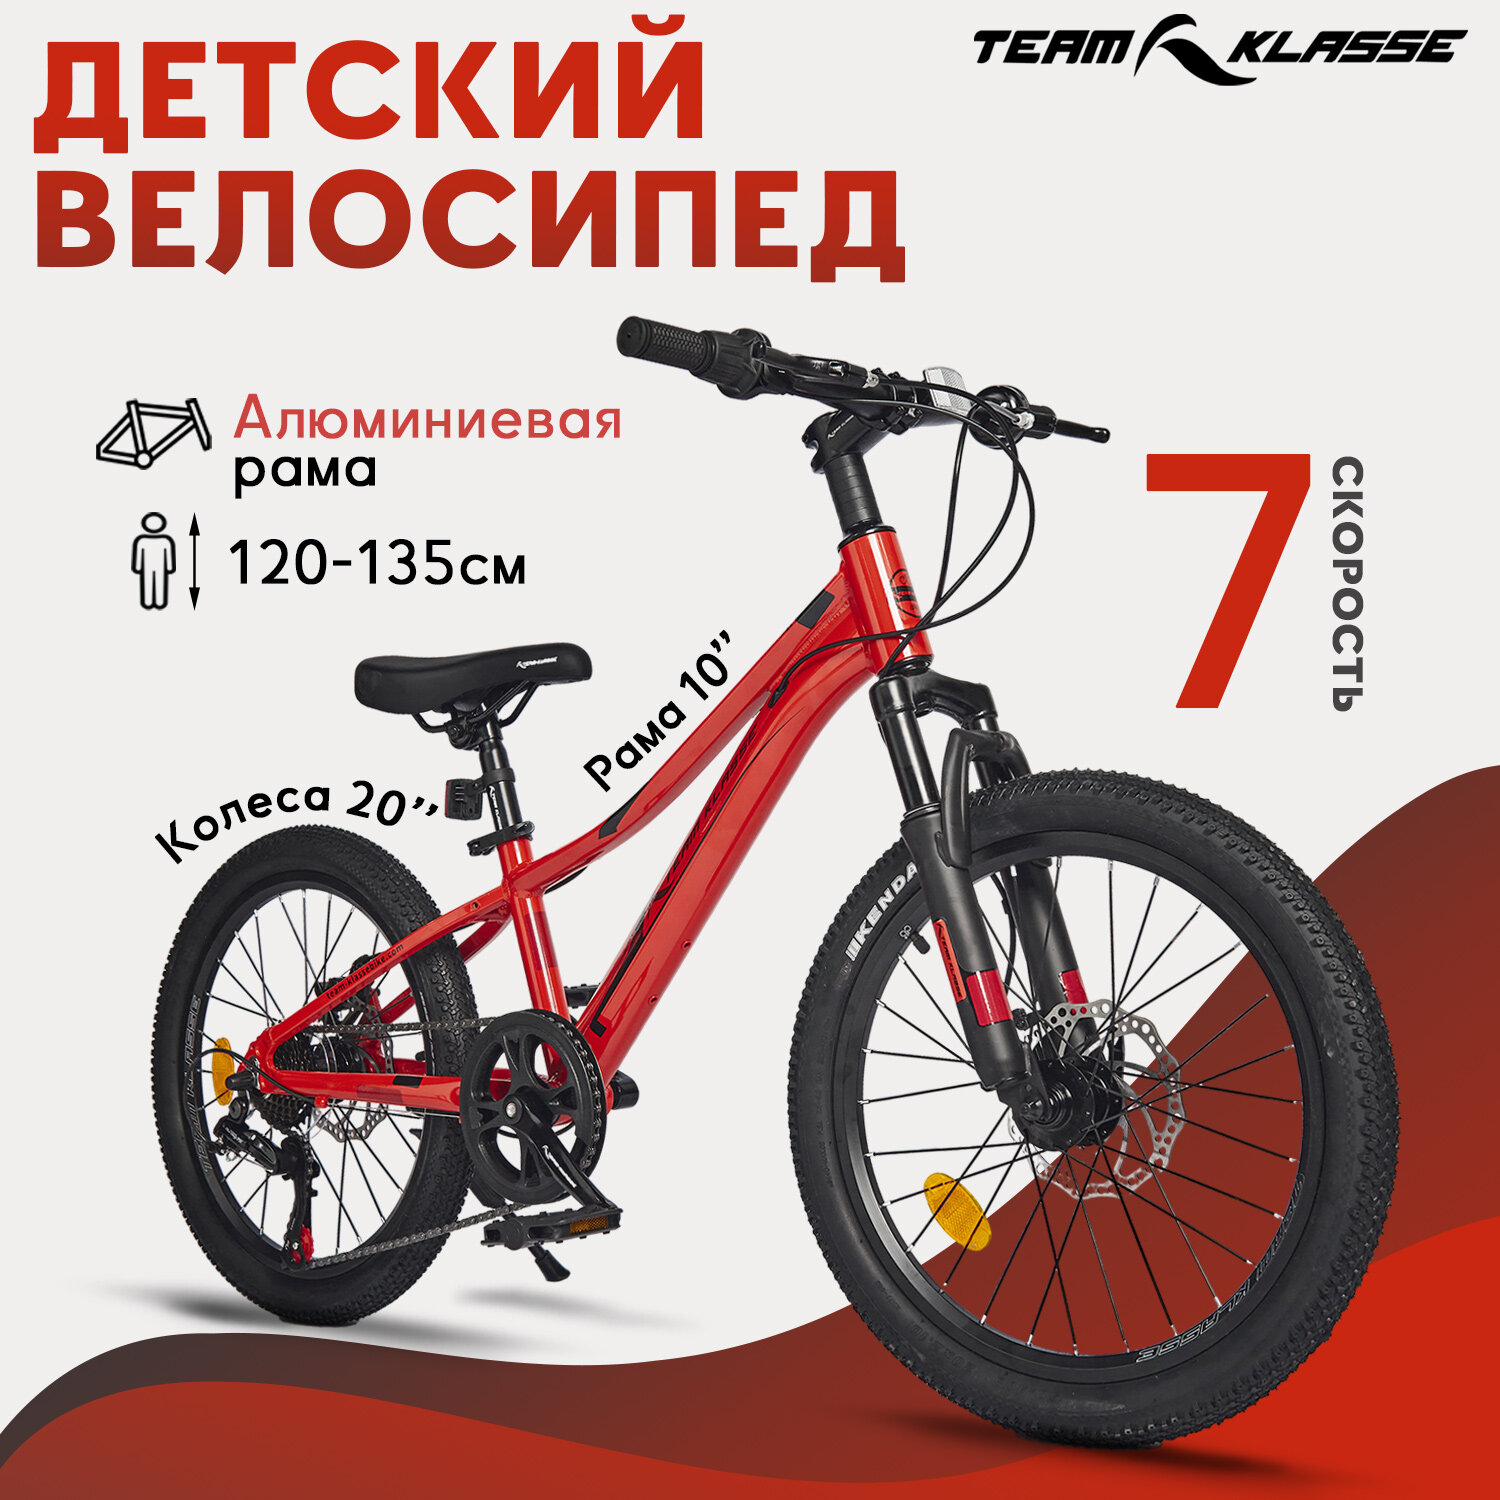 Горный детский велосипед Team Klasse F-4-D, красный, диаметр колес 20 дюймов